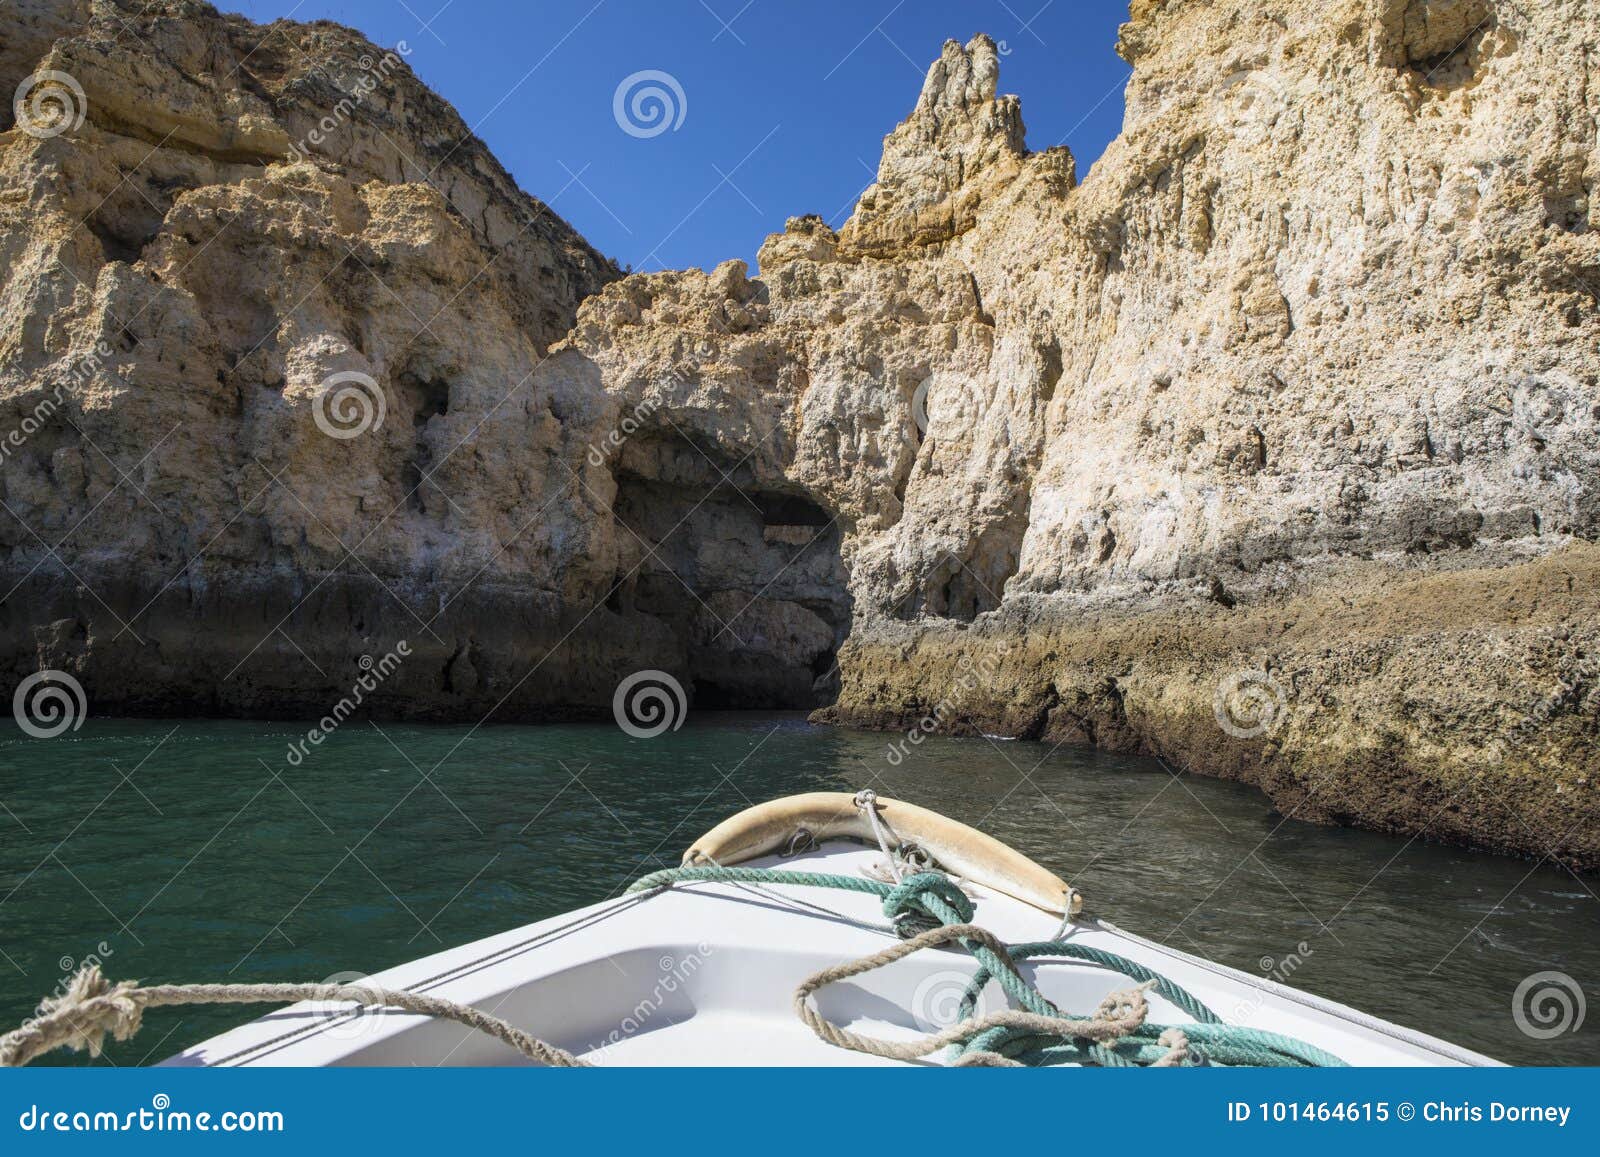 orange grottos take a trip by boat